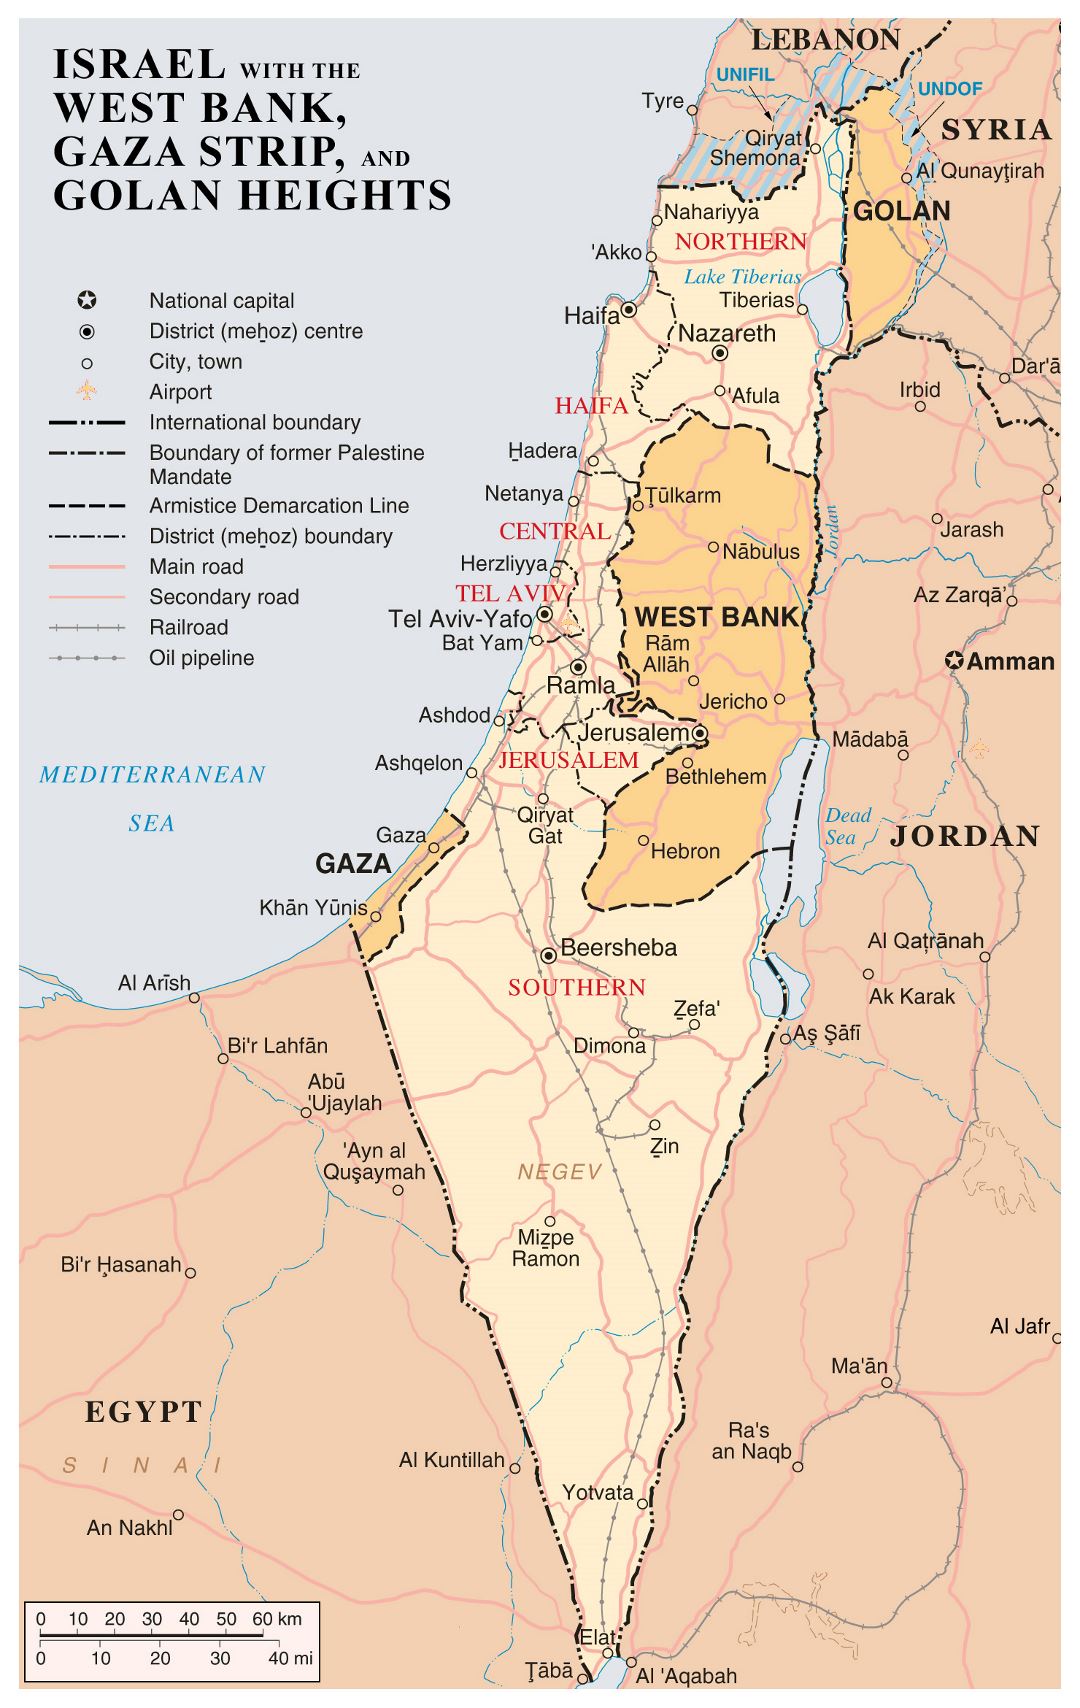 Grande detallado mapa de Israel con Cisjordania, la Franja de Gaza y Golgan Heights